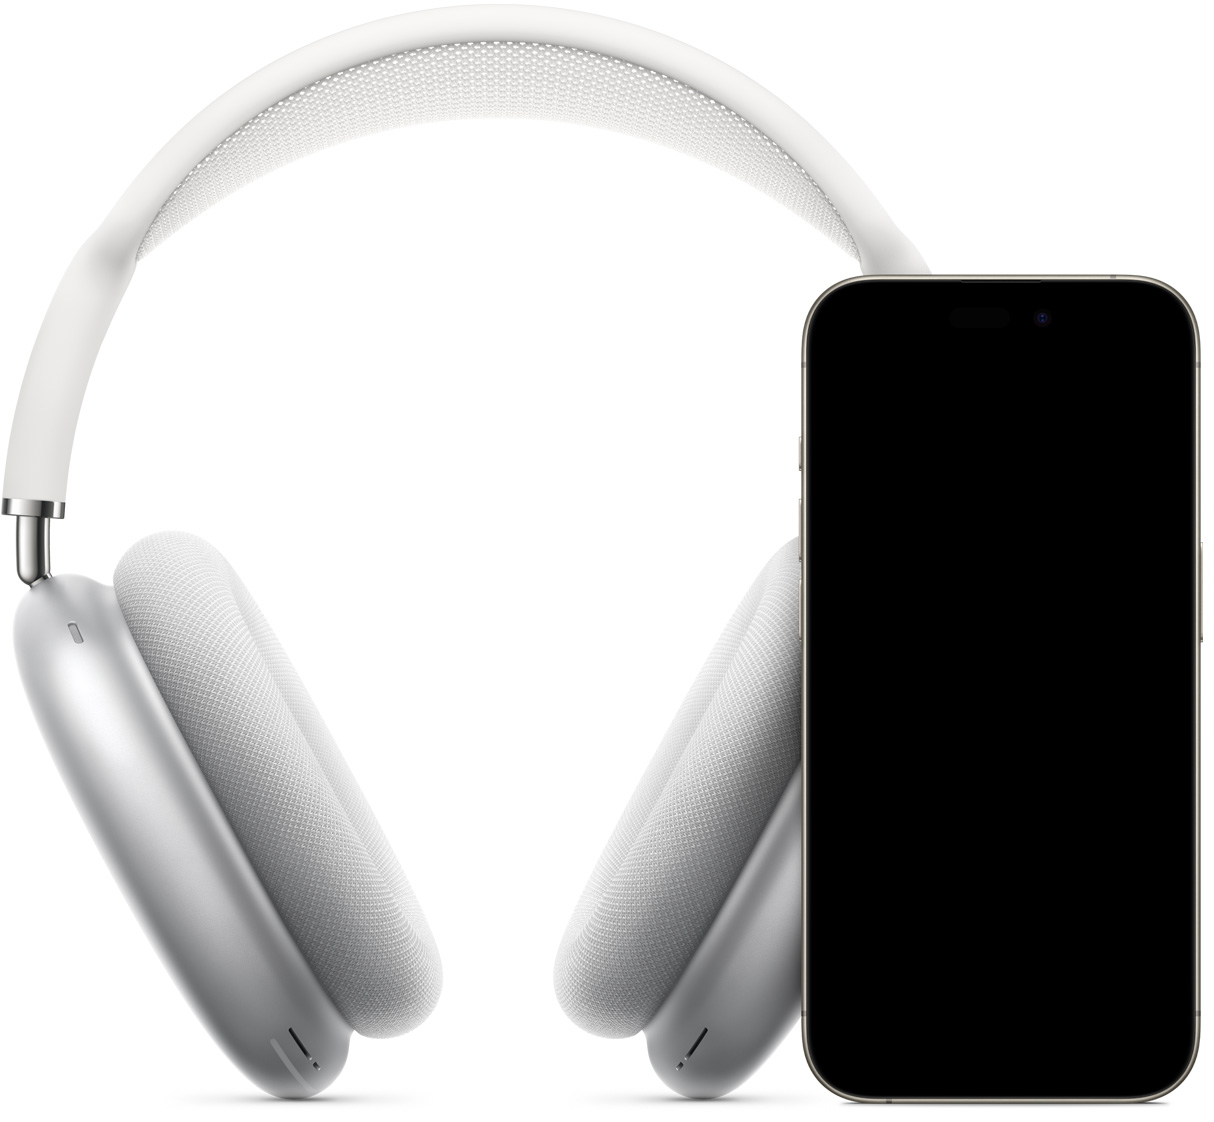 Imagen que muestra unos AirPods Max en color plata detrás de un iPhone con la pantalla de configuración instantánea, la pantalla muestra el botón Conectar que enlaza los AirPods Max con un toque.